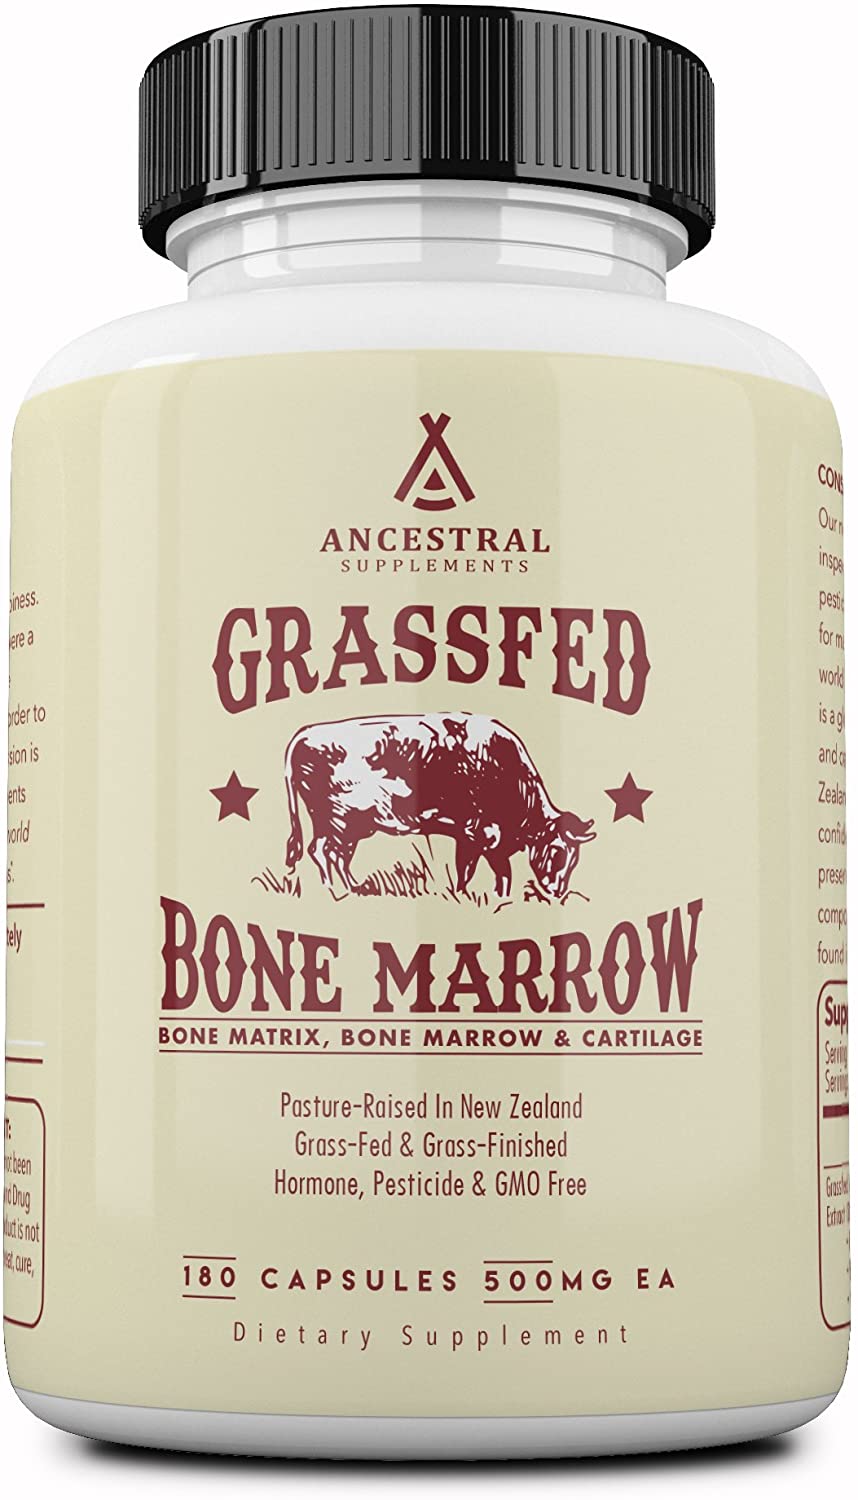 bone marrow supplement, bone marrow supplement benefits, bone marrow growth supplement, bone marrow supplement for osteoarthritis, bone marrow supplement side effects